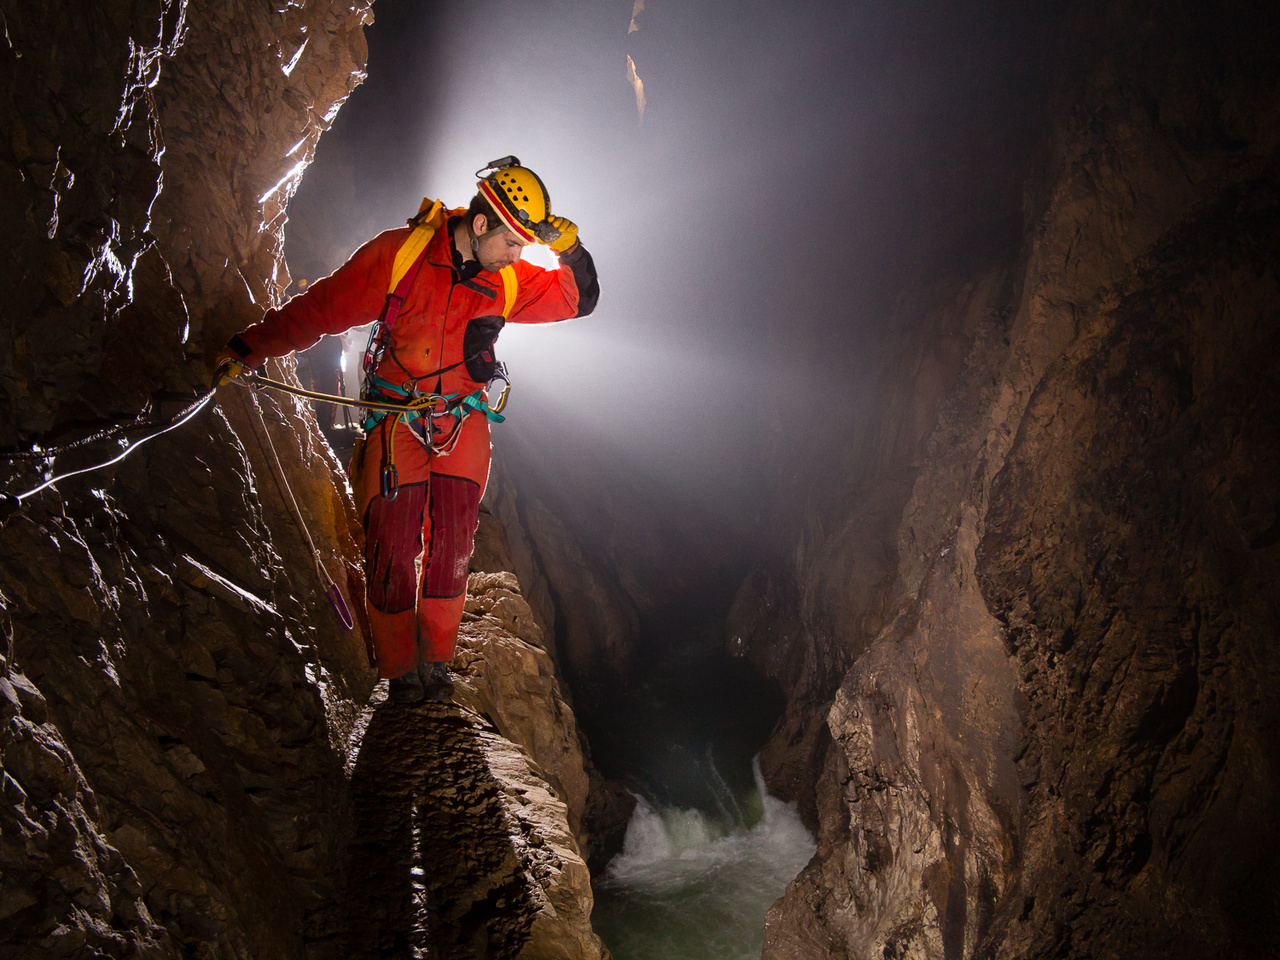 A szlovéniai Skocjan-barlangban évente több százezer látogatót ejt ámulatba az 80-100 méter magas folyosókban dübörgő víz, de a látogatók által elzárt részek is hasonlóan monumentálisak. A barlang végpontjához néhol csak a több tíz méteres magasságban futó, keskeny, drótkötéllel biztosított párkányokon lehet eljutni. 